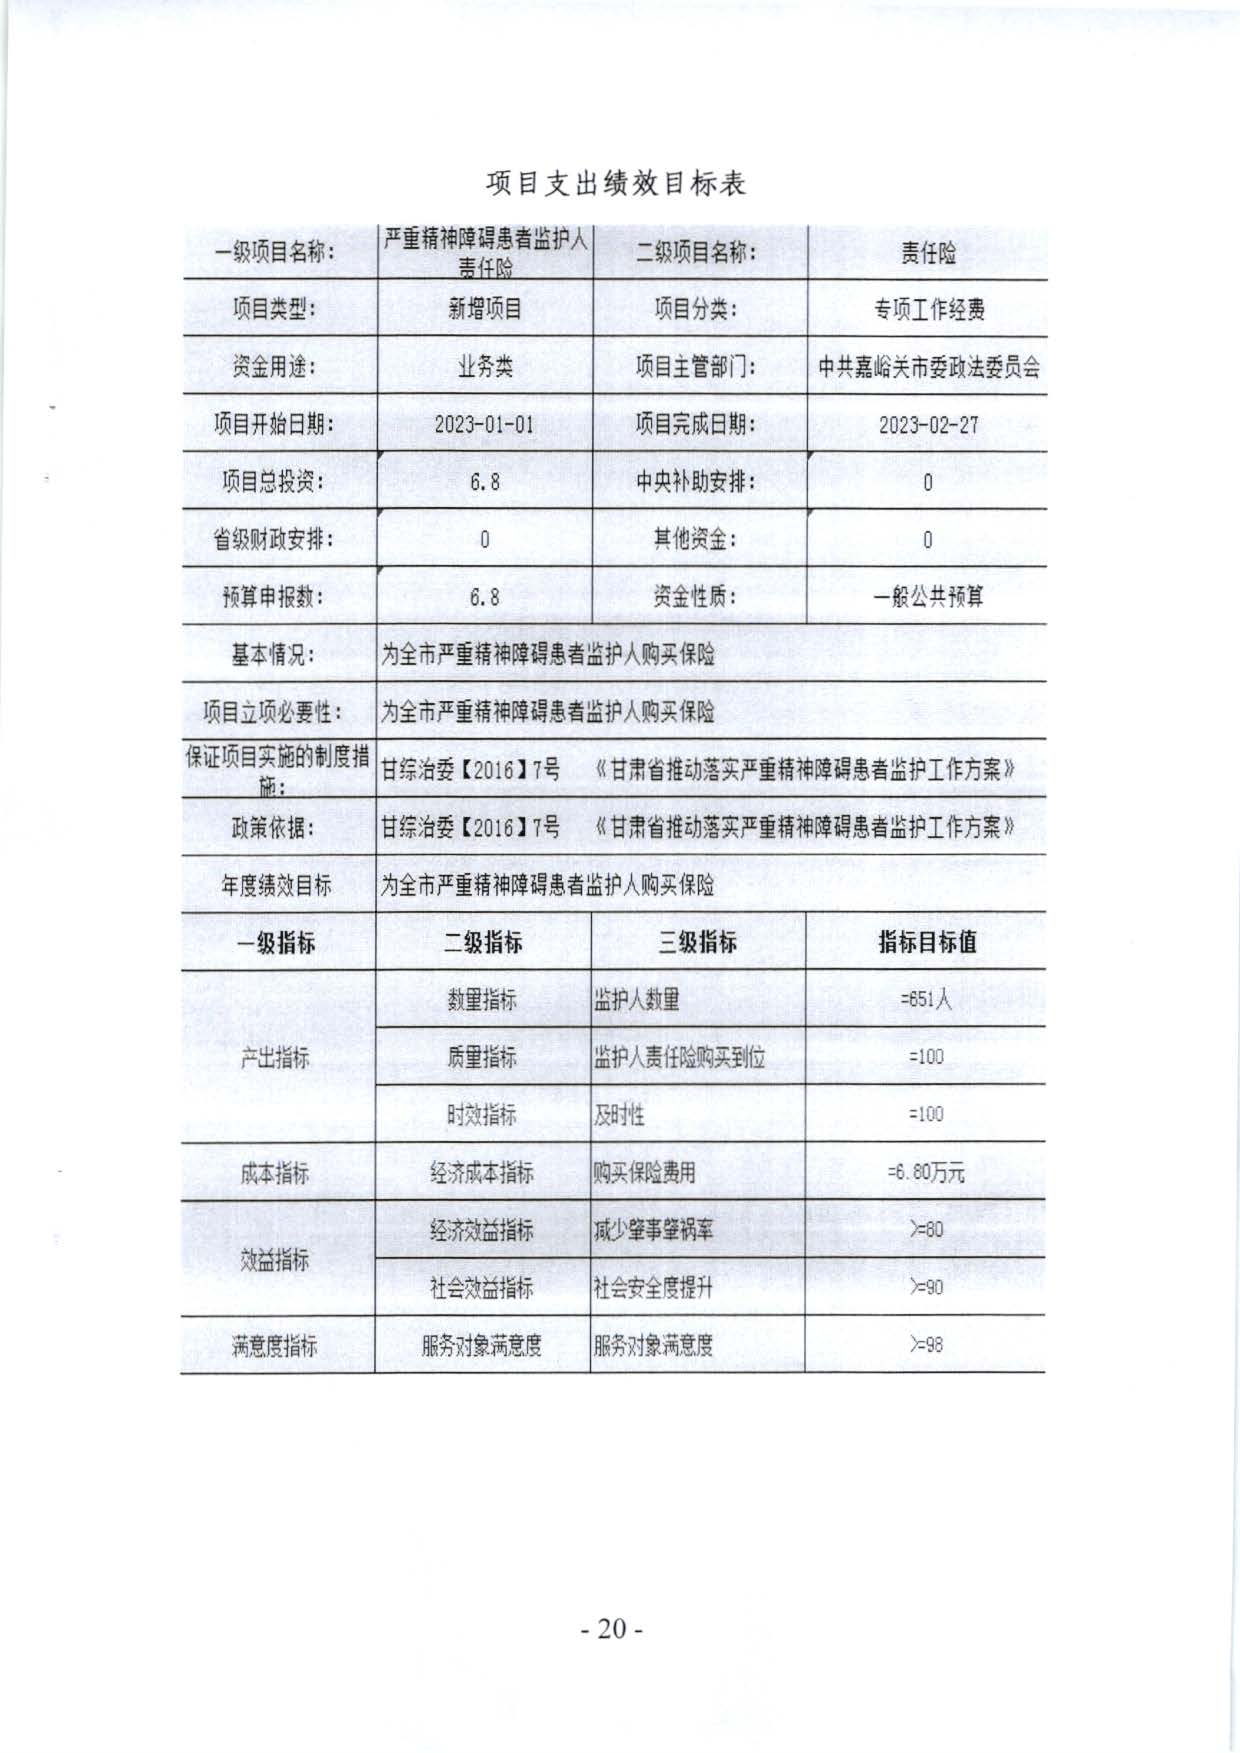 嘉峪关市委政法委2023年预算公开情况说明(1)_页面_20